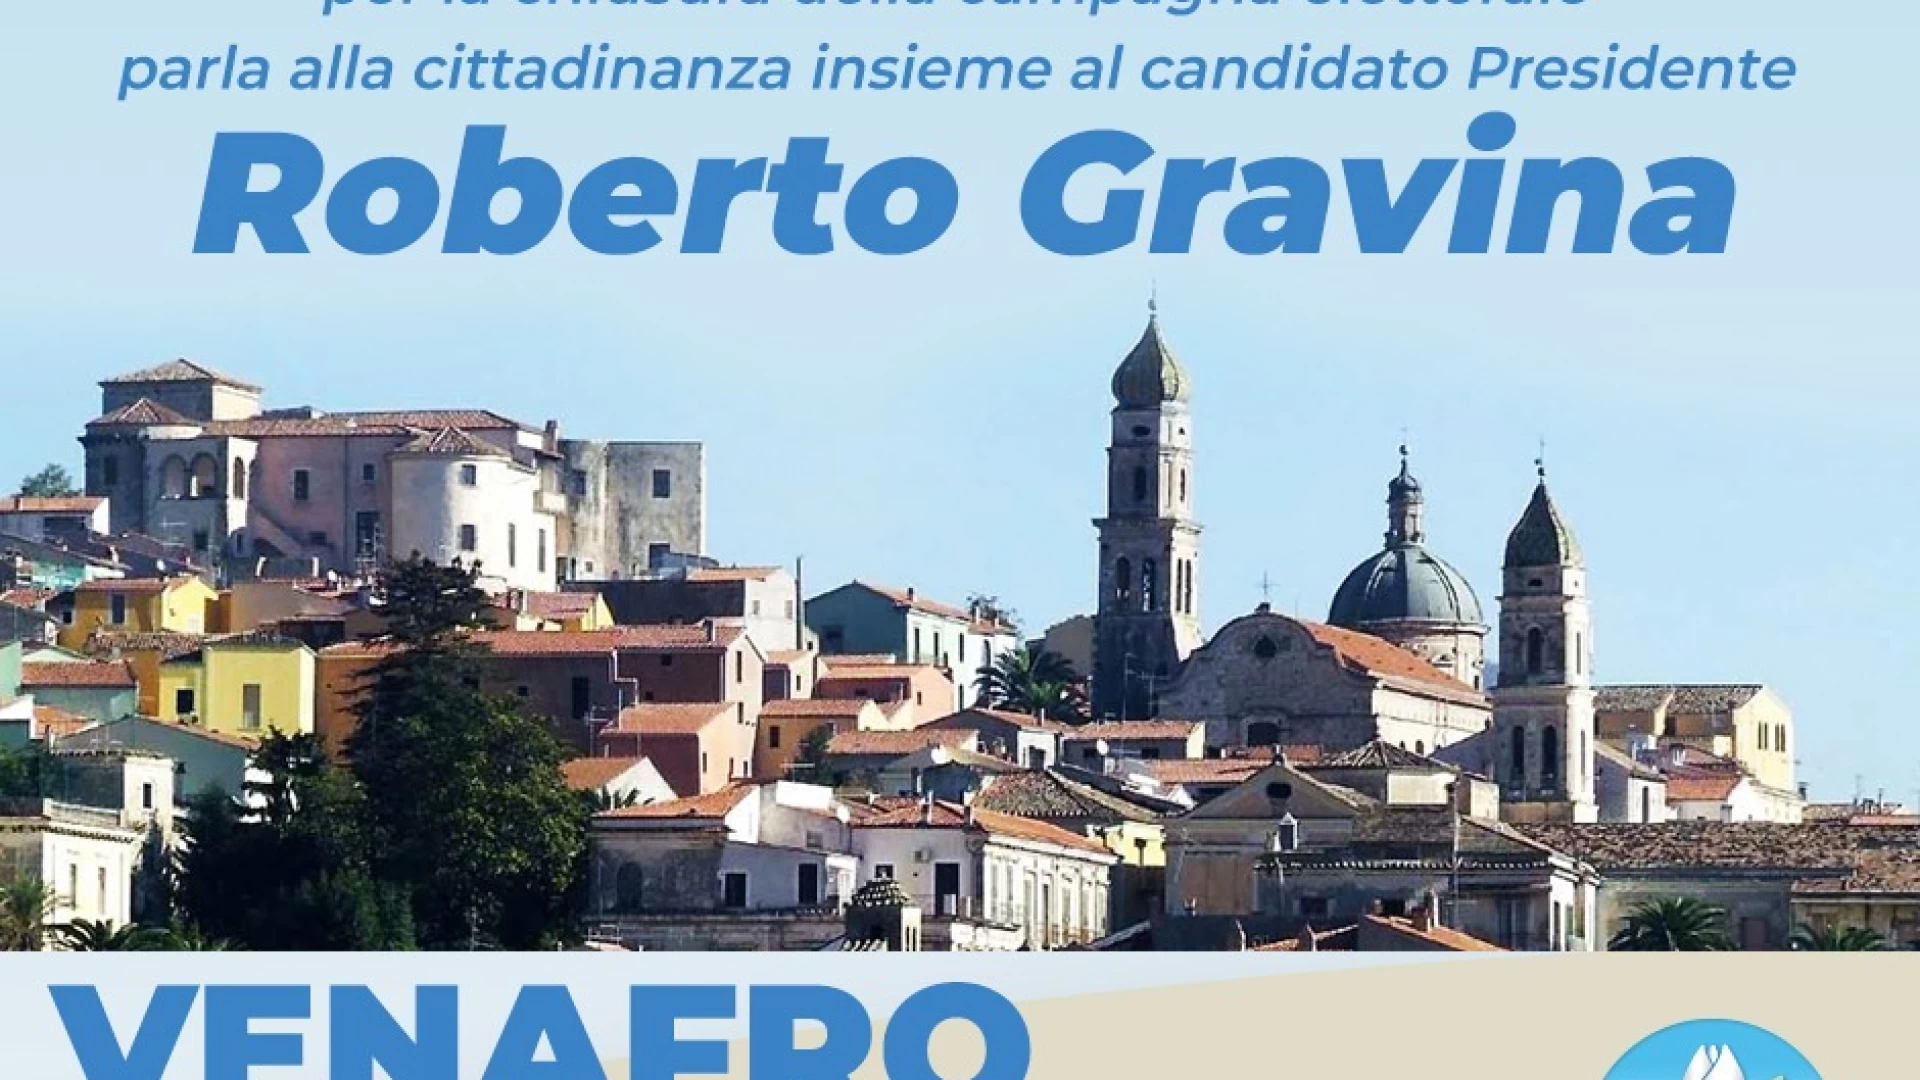 Venafro: Antonio Tedeschi domani sera chiuderà la sua campagna elettorale in Piazza Cimorelli con il candidato presidente Gravina.